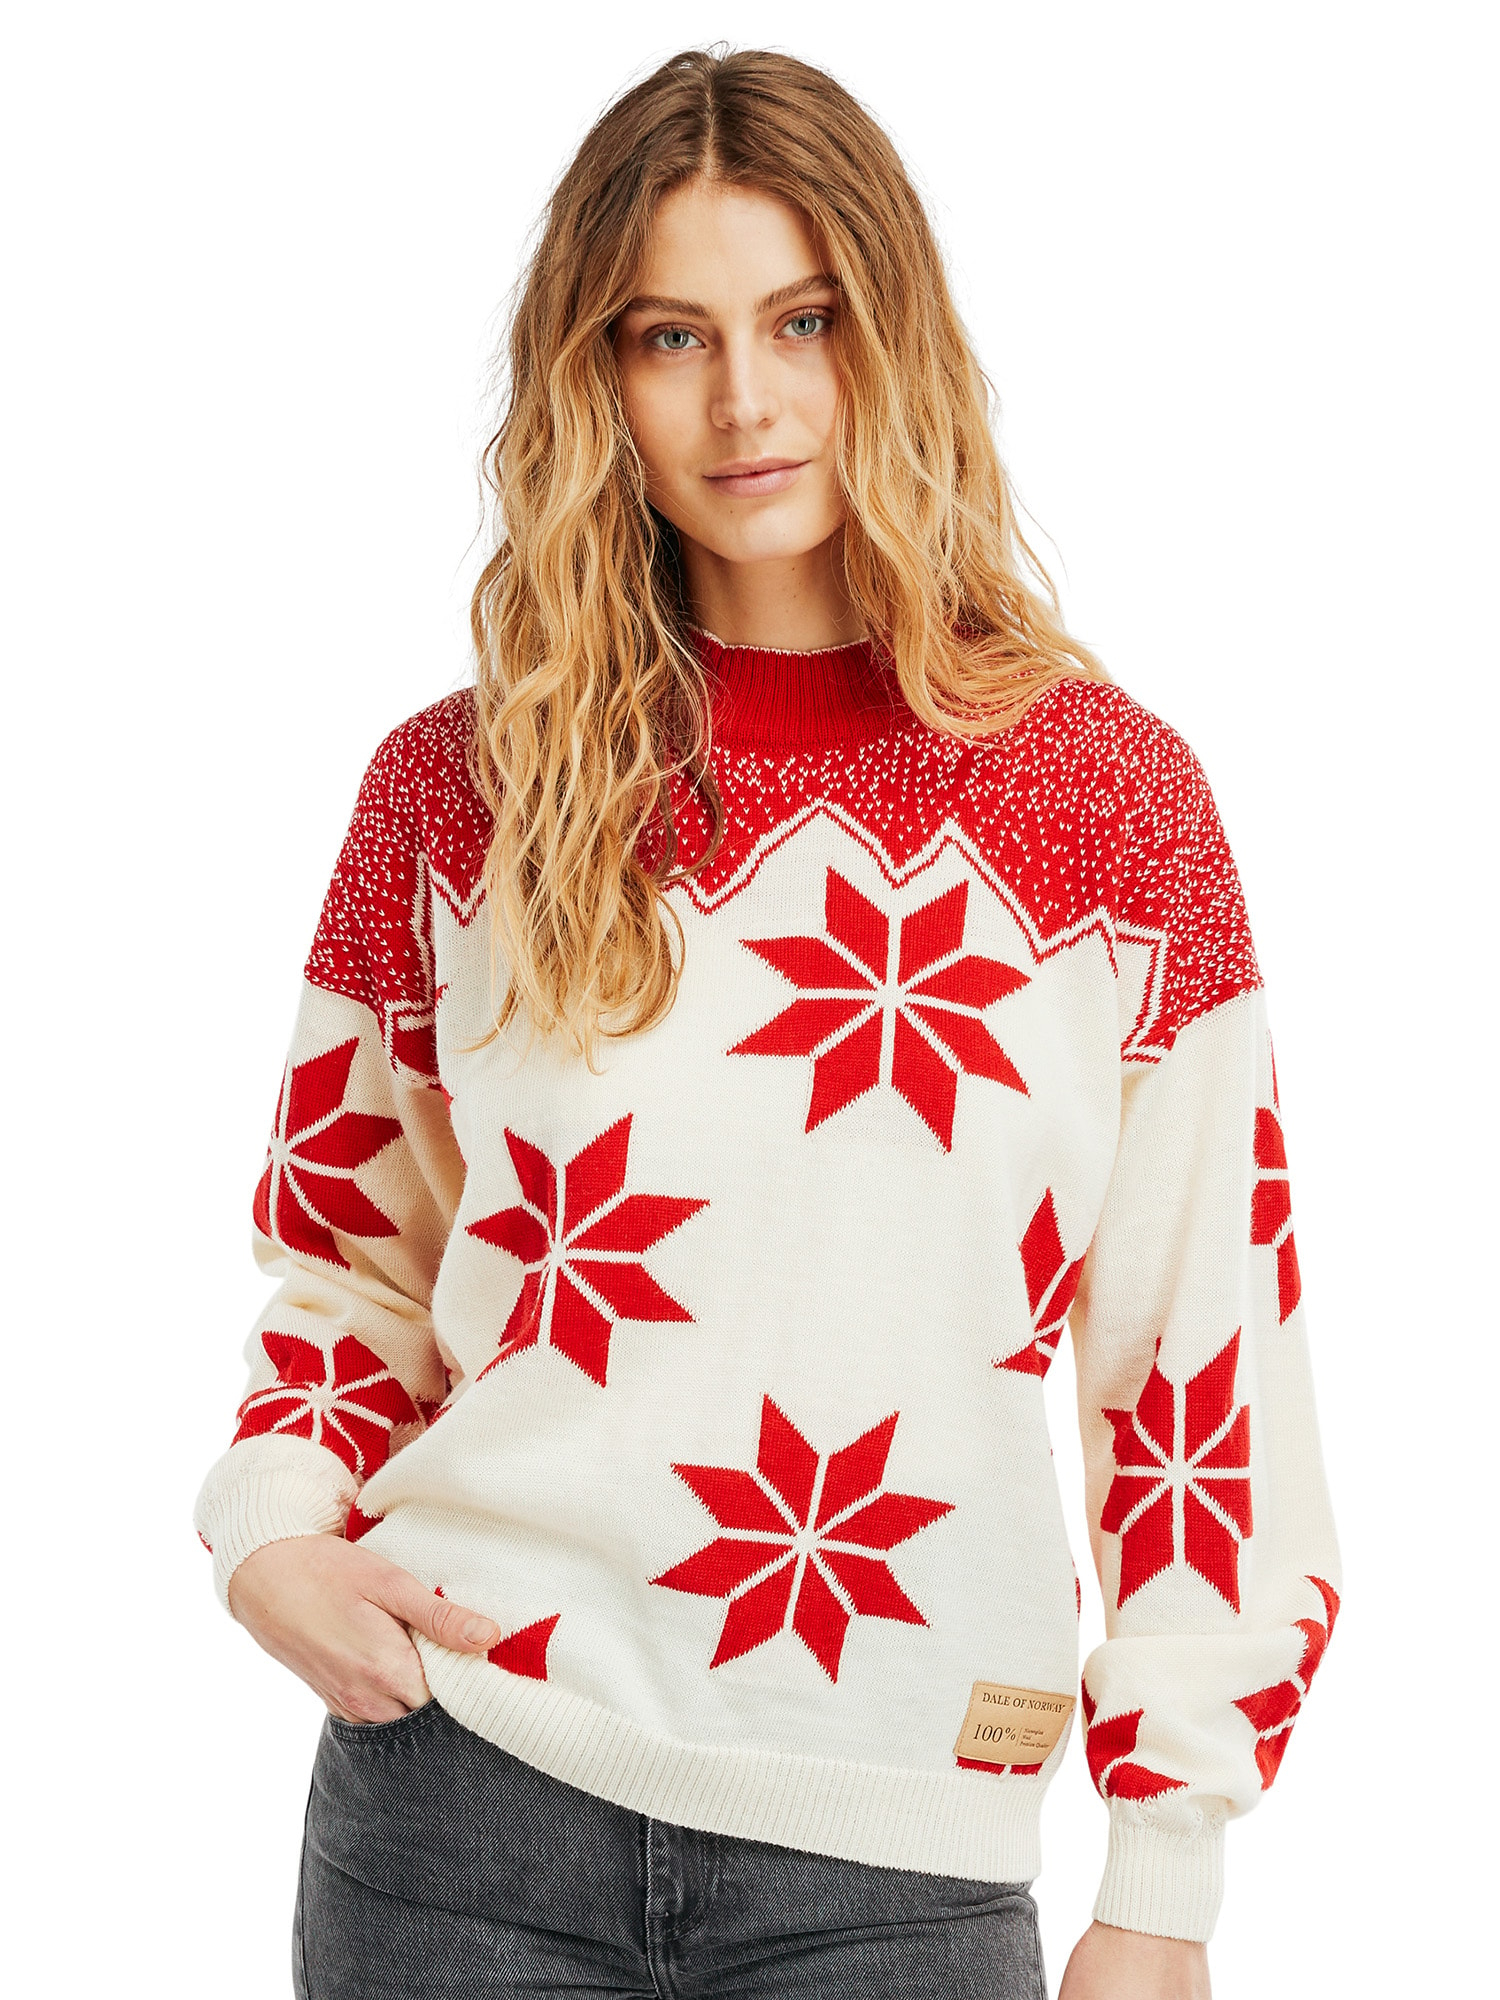 Winter Women's Sweater - Norwegian Wool